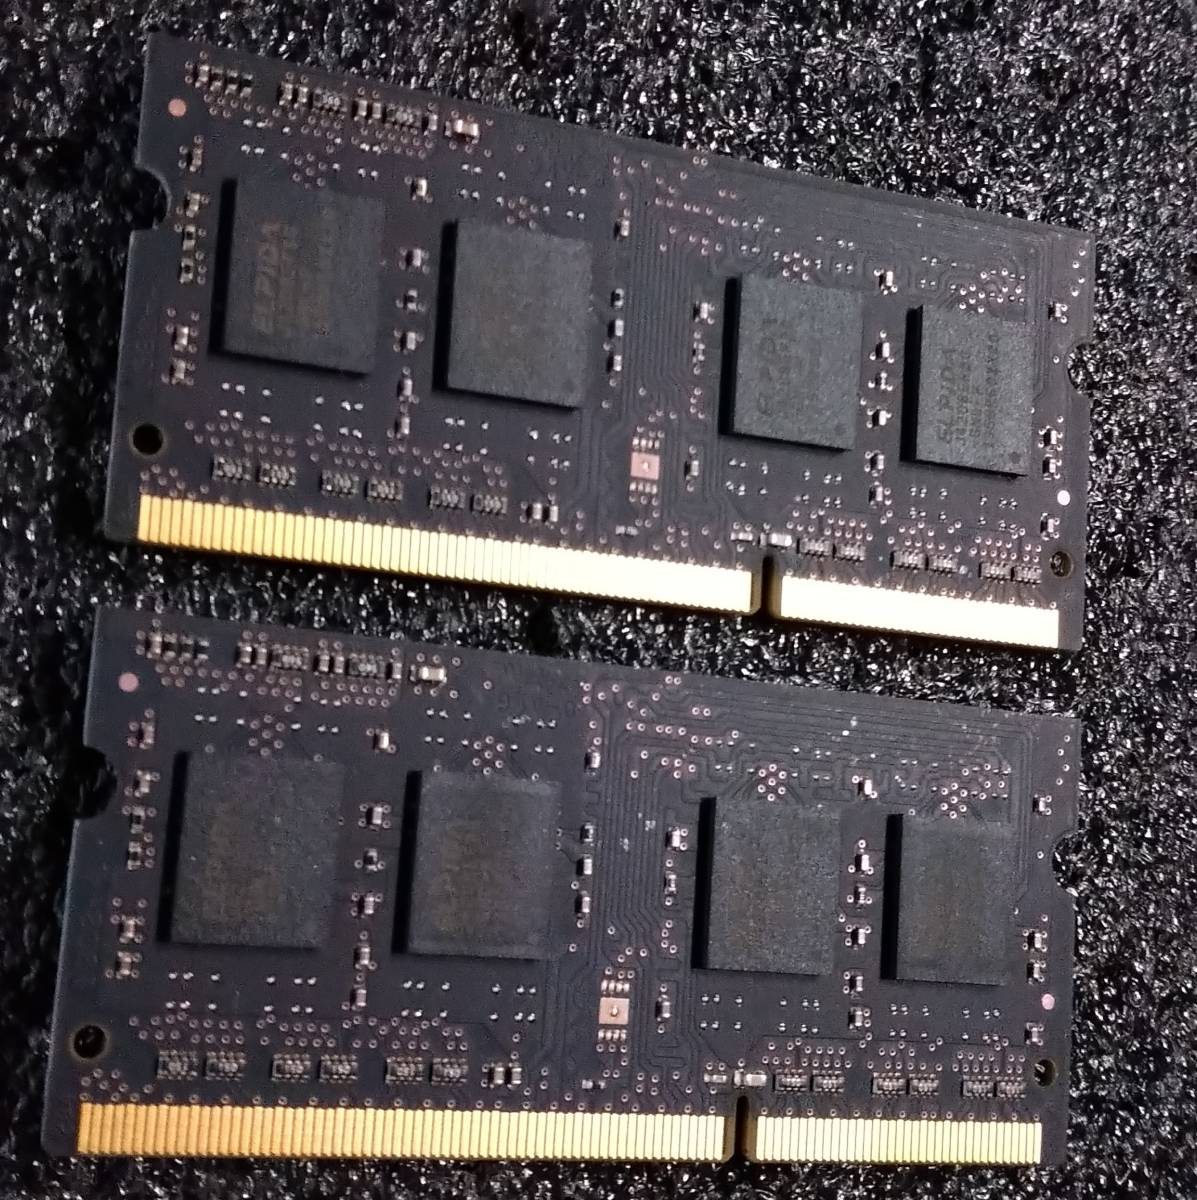 【中古】DDR3 SO-DIMM 8GB(4GB2枚組)ELPIDA EBJ40UG8EFU5-GNL-F [DDR3-1600 PC3L-12800 1.35V]